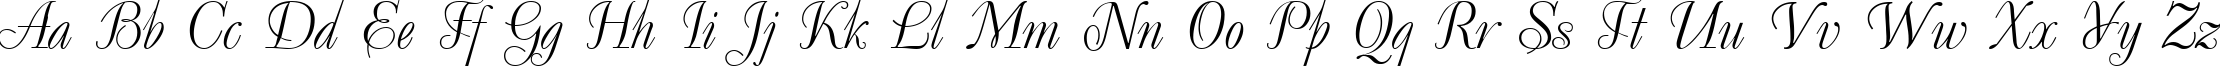 Пример написания английского алфавита шрифтом Uk_Decor